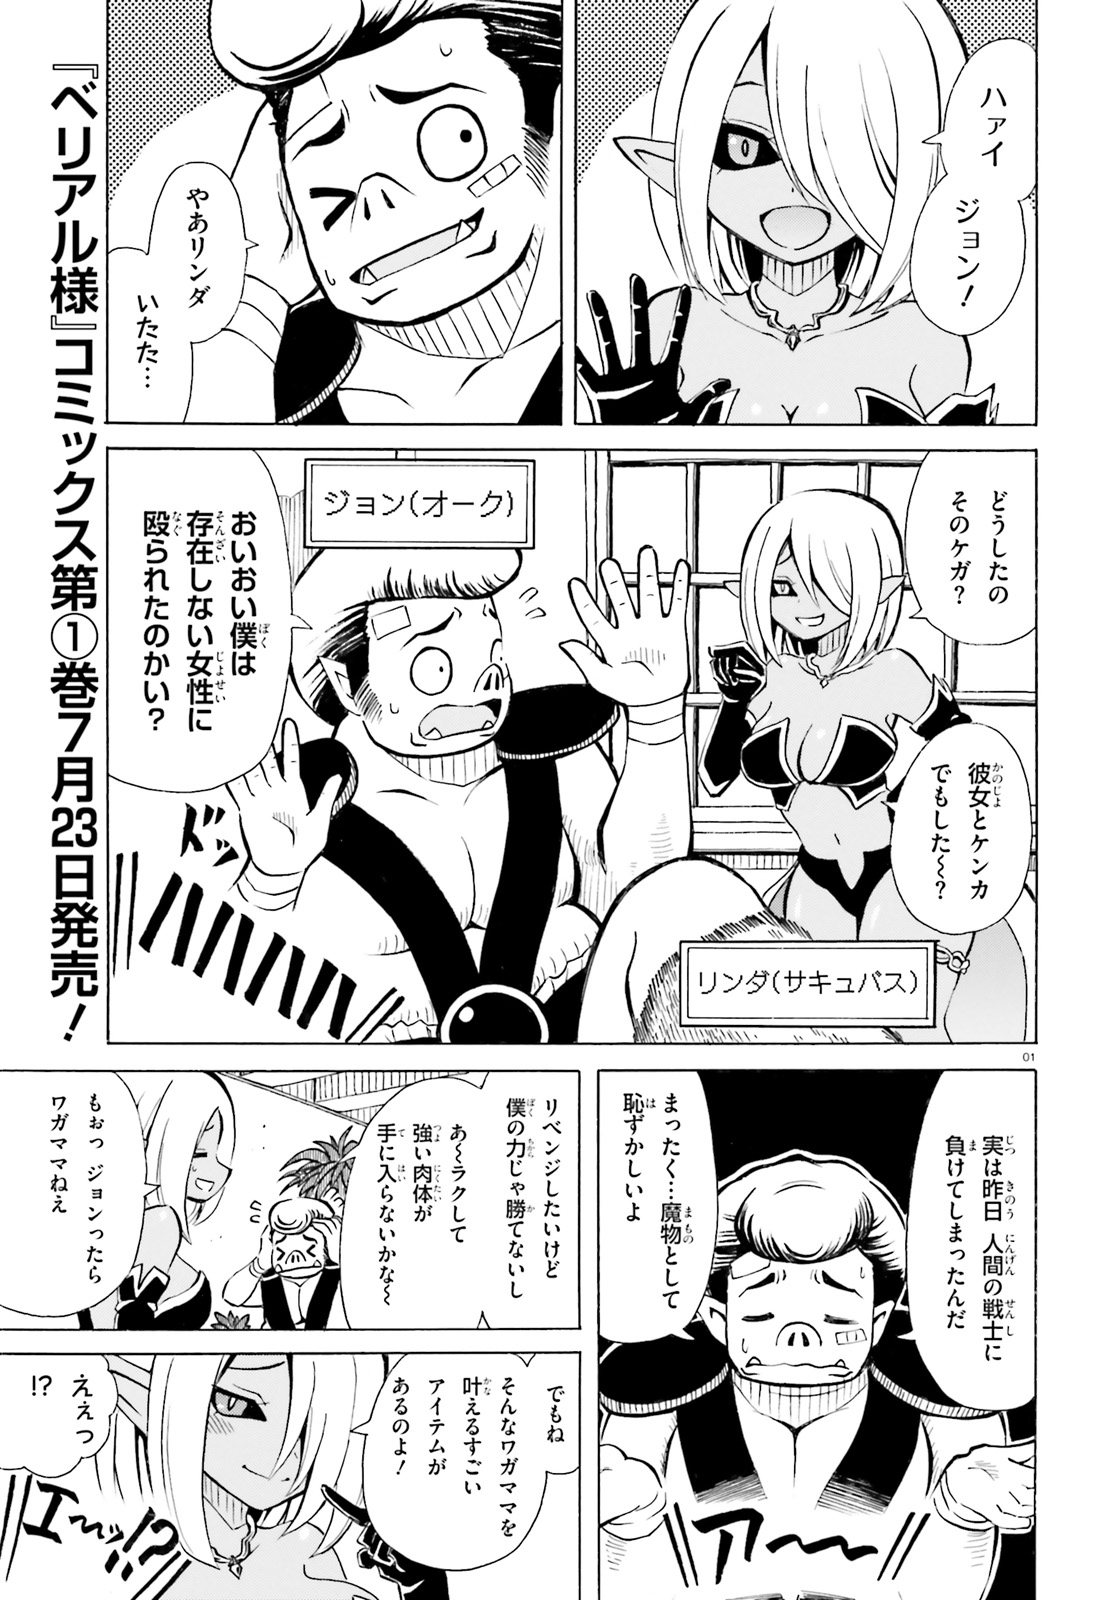 Beriaru-sama wa Shitenno no Naka Demo × × - Chapter 6.5 - Page 1